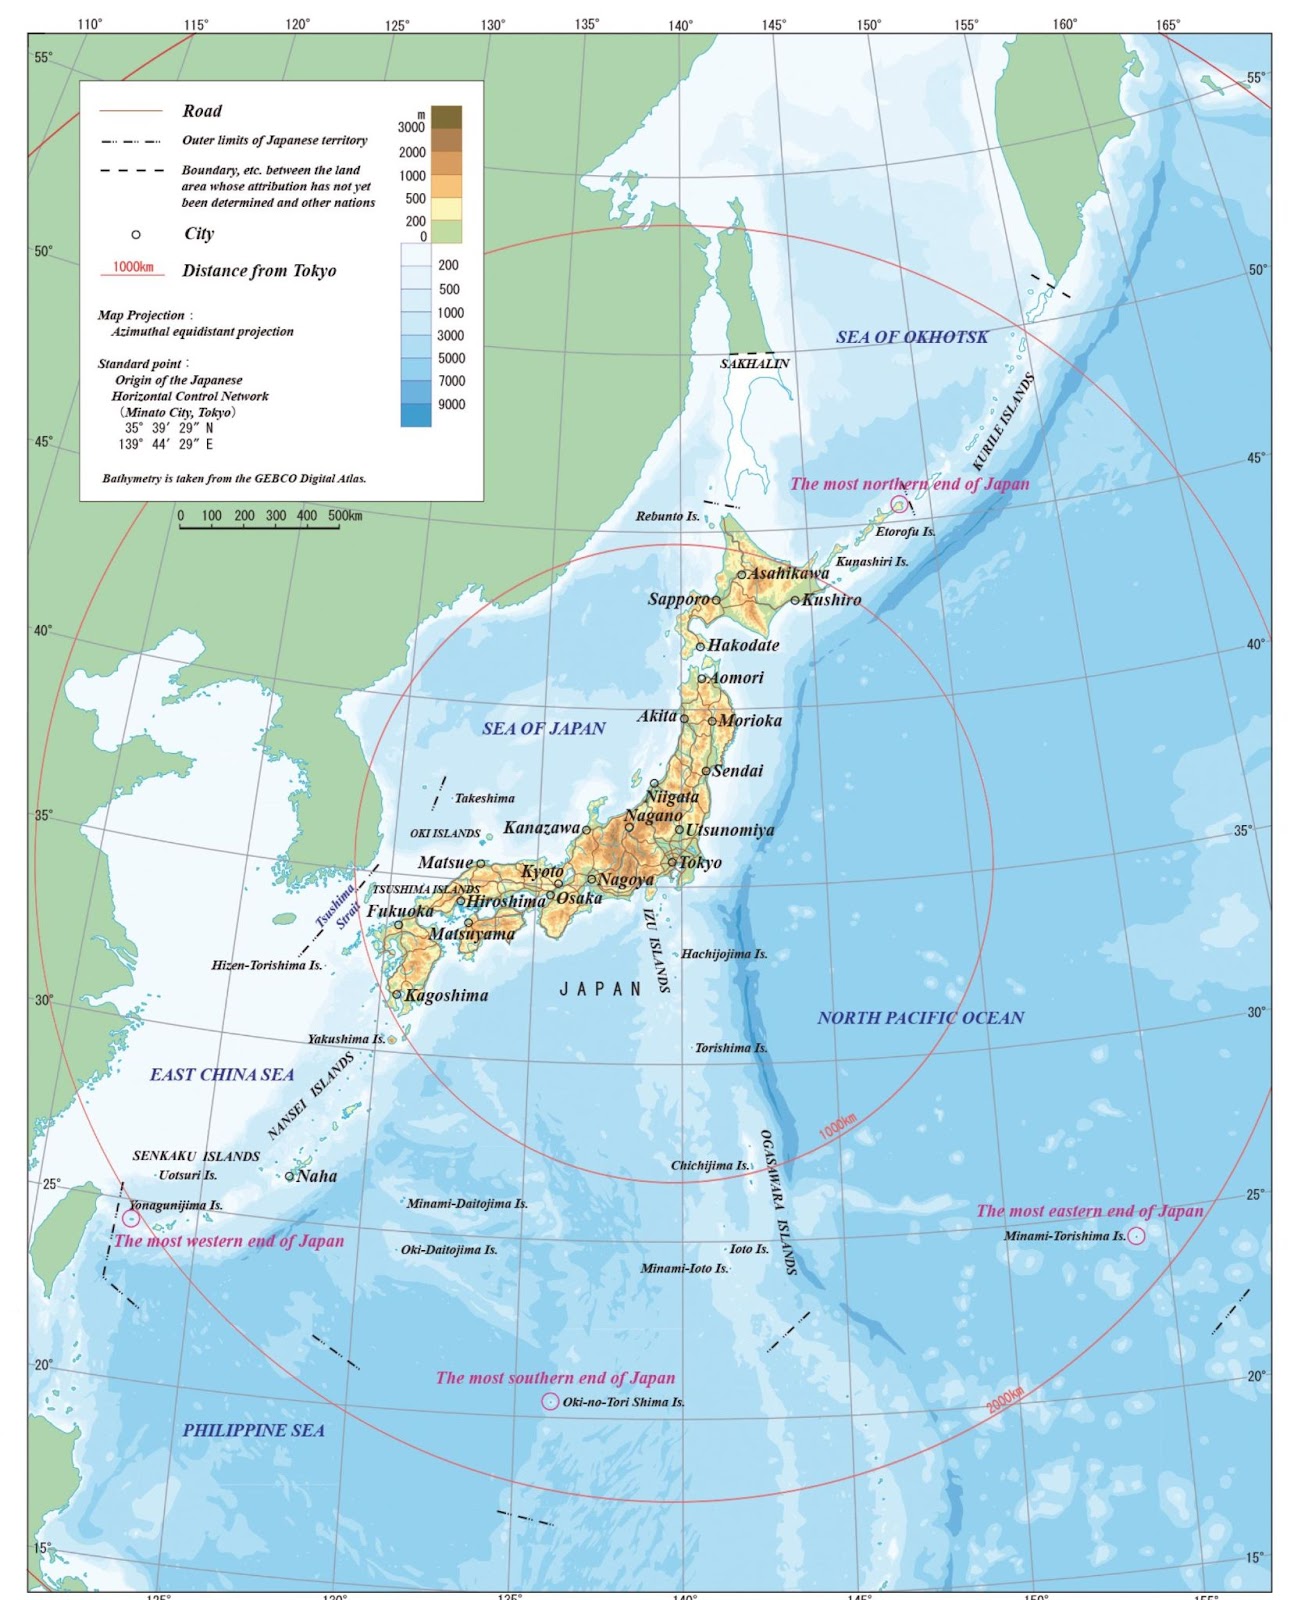 Ký hiệu bản đồ tự nhiên của Nhật Bản